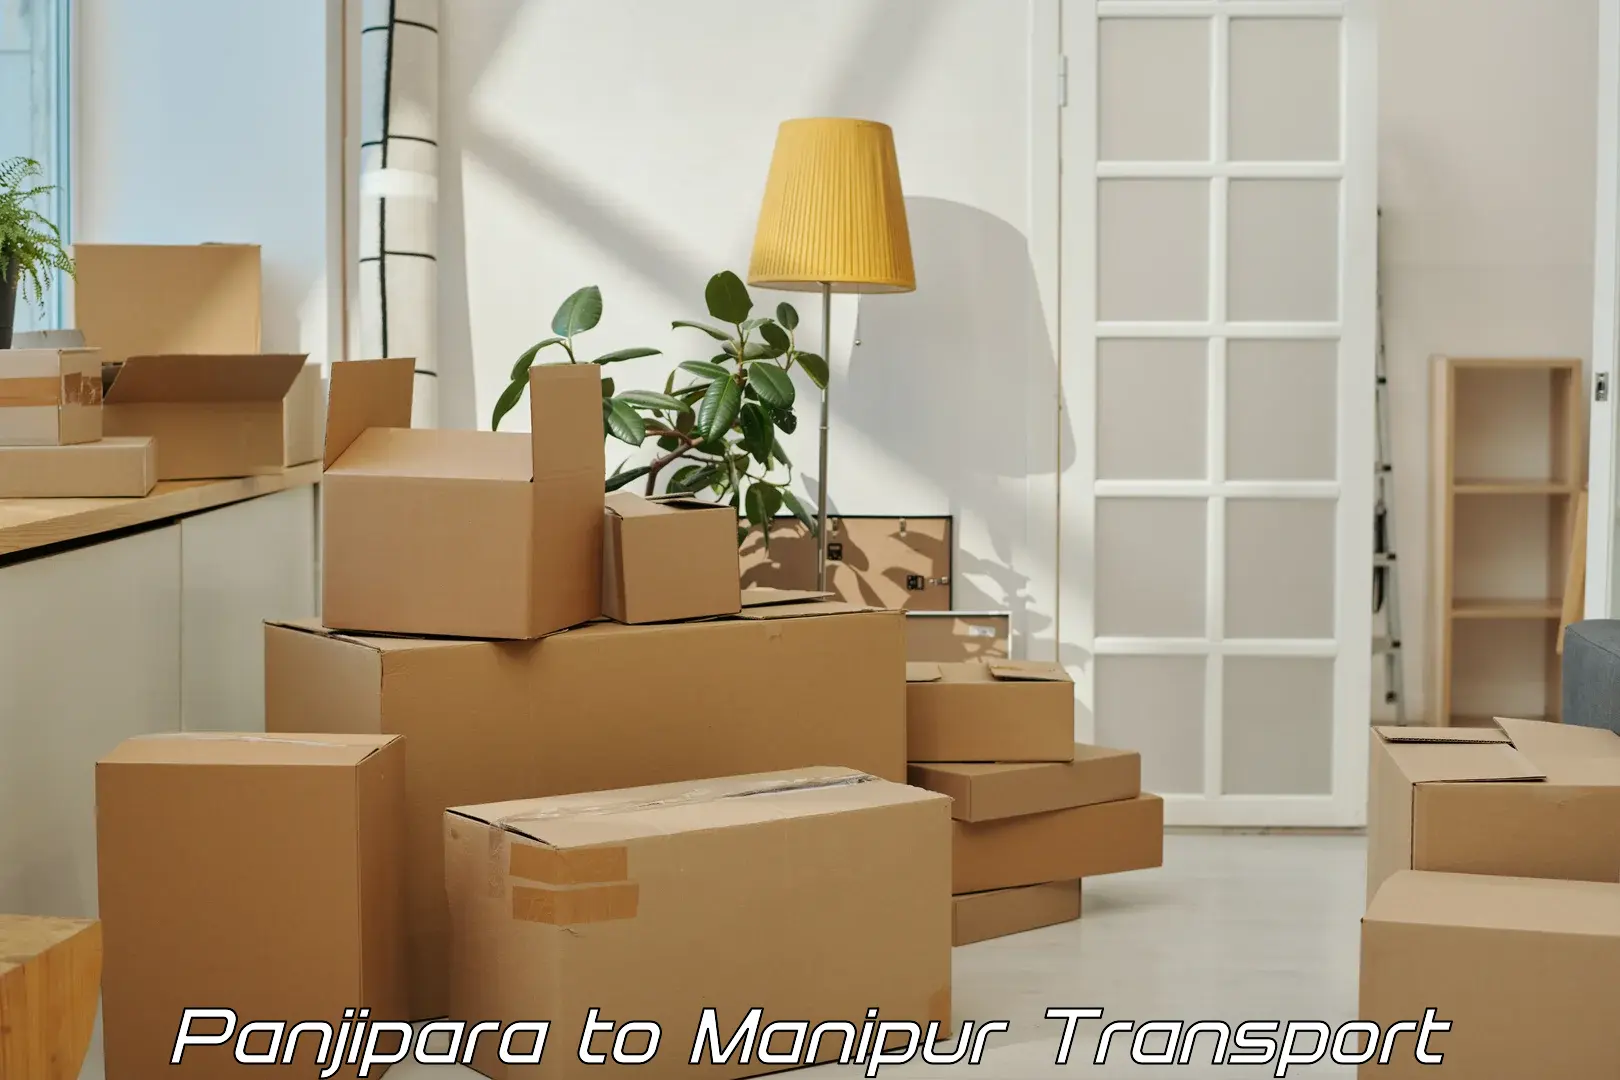 Furniture transport service Panjipara to Moirang